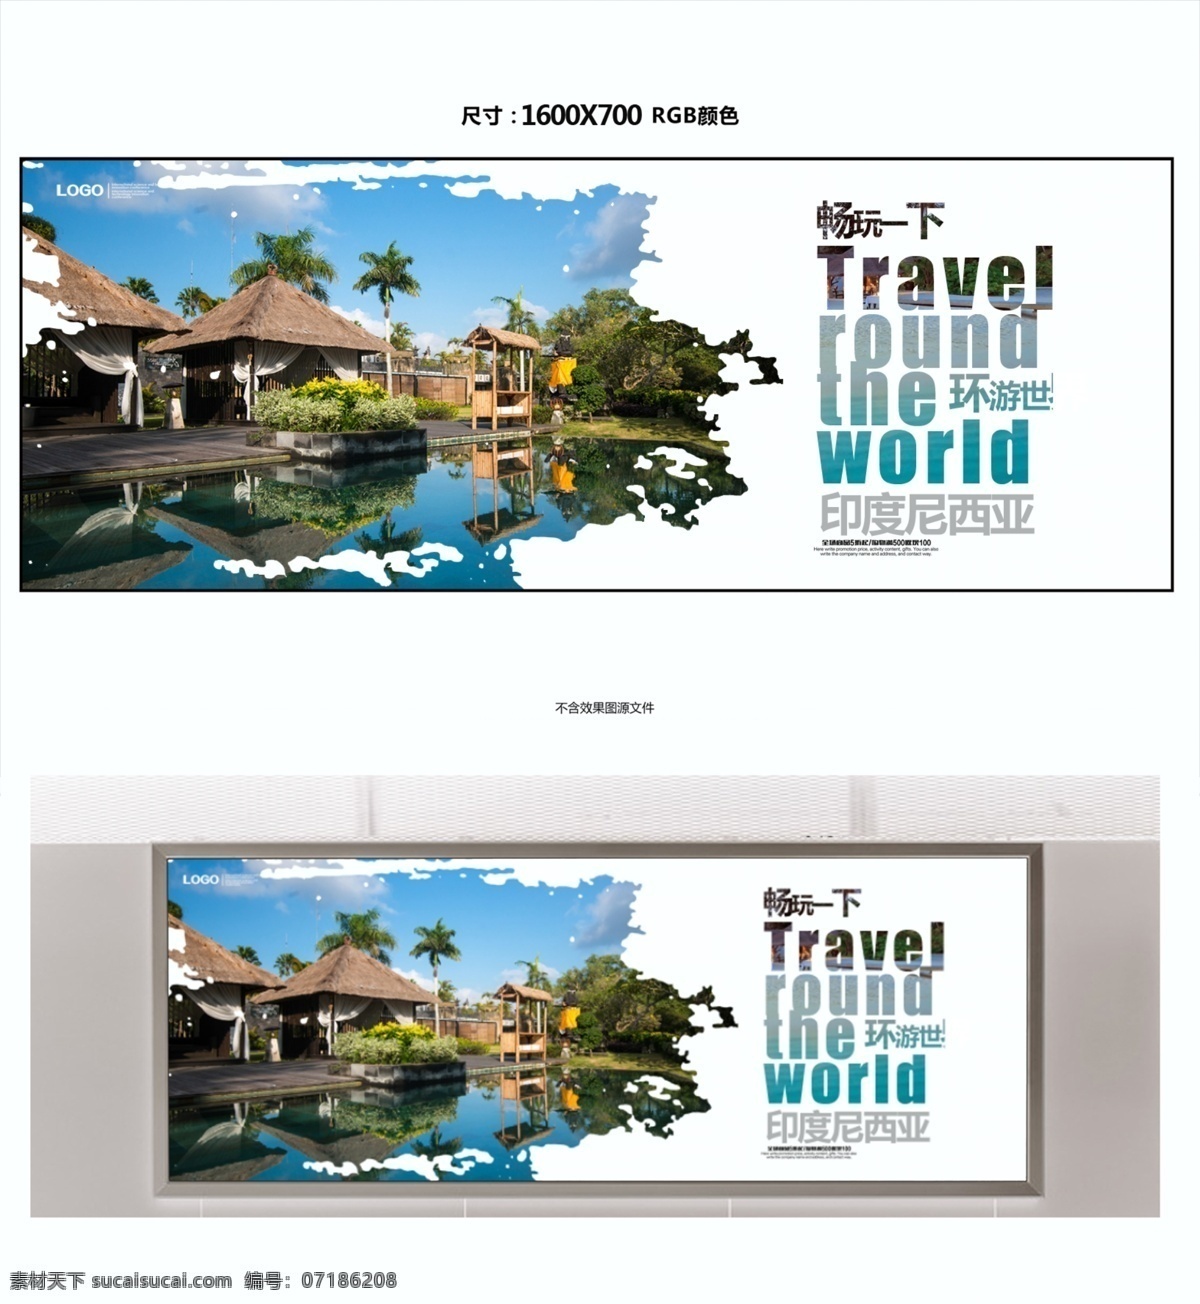 印度尼西亚 旅游海报 旅游 海报 旅游公司海报 旅行社海报 旅游广告 旅游公司广告 旅行海报 旅游海报设计 旅游宣传海报 夏季旅游海报